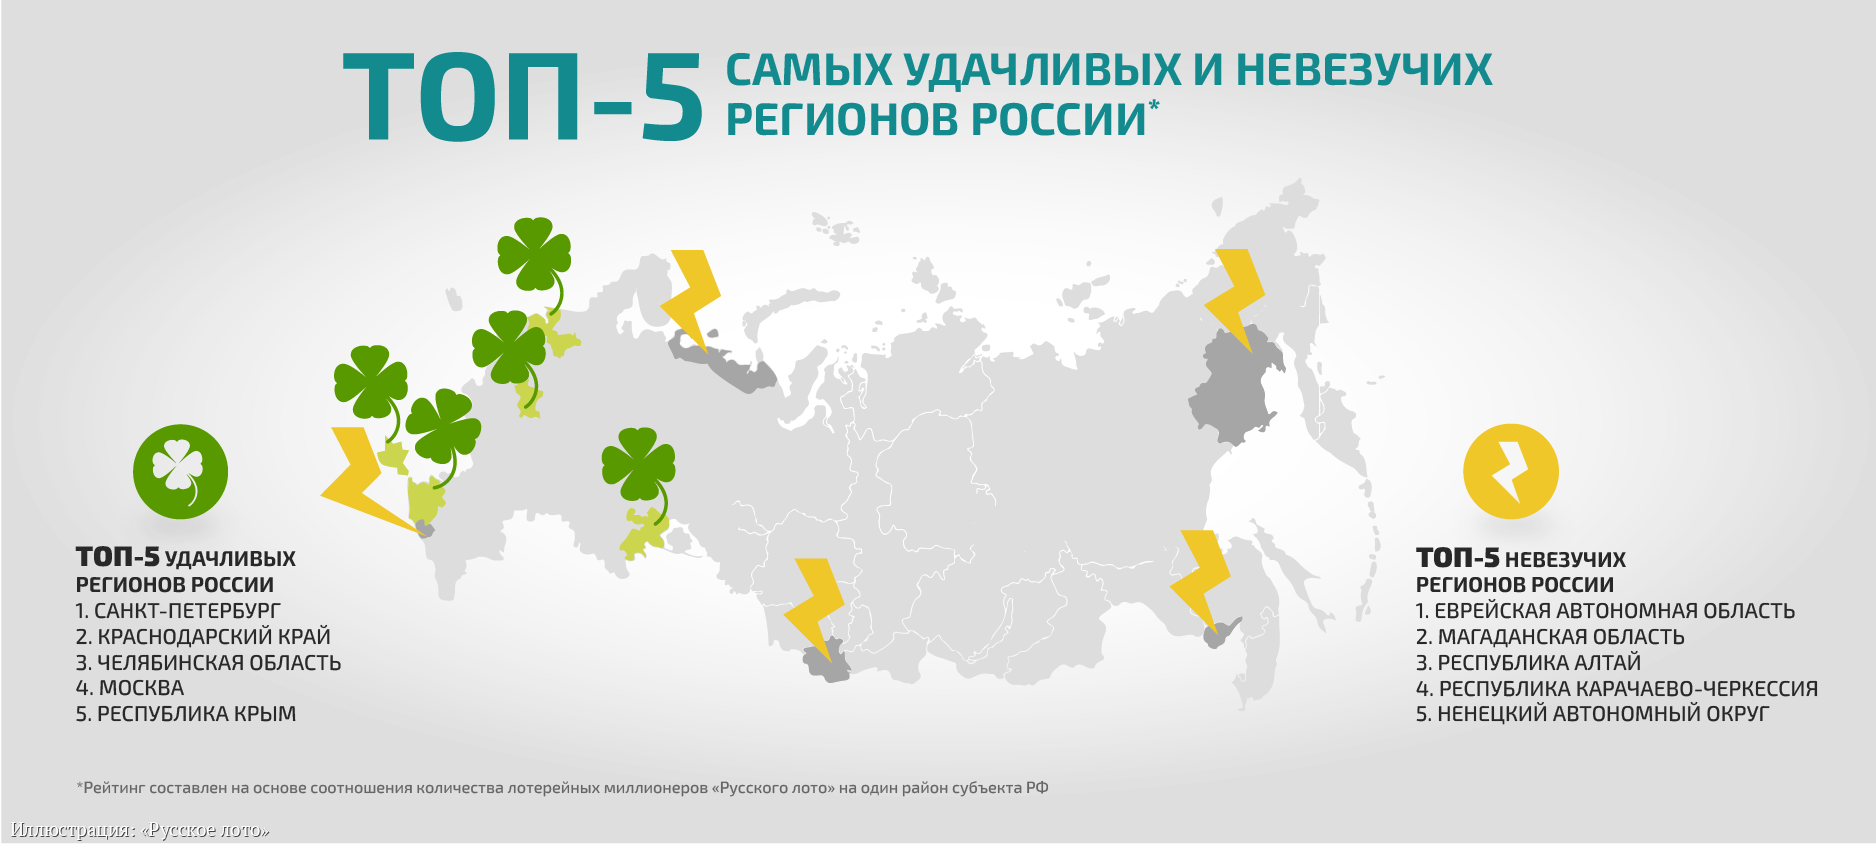 Лотерея Русское лото назвала самые удачливые и невезучие регионы... Иллюстрация к материалу ИА REGNUM.png